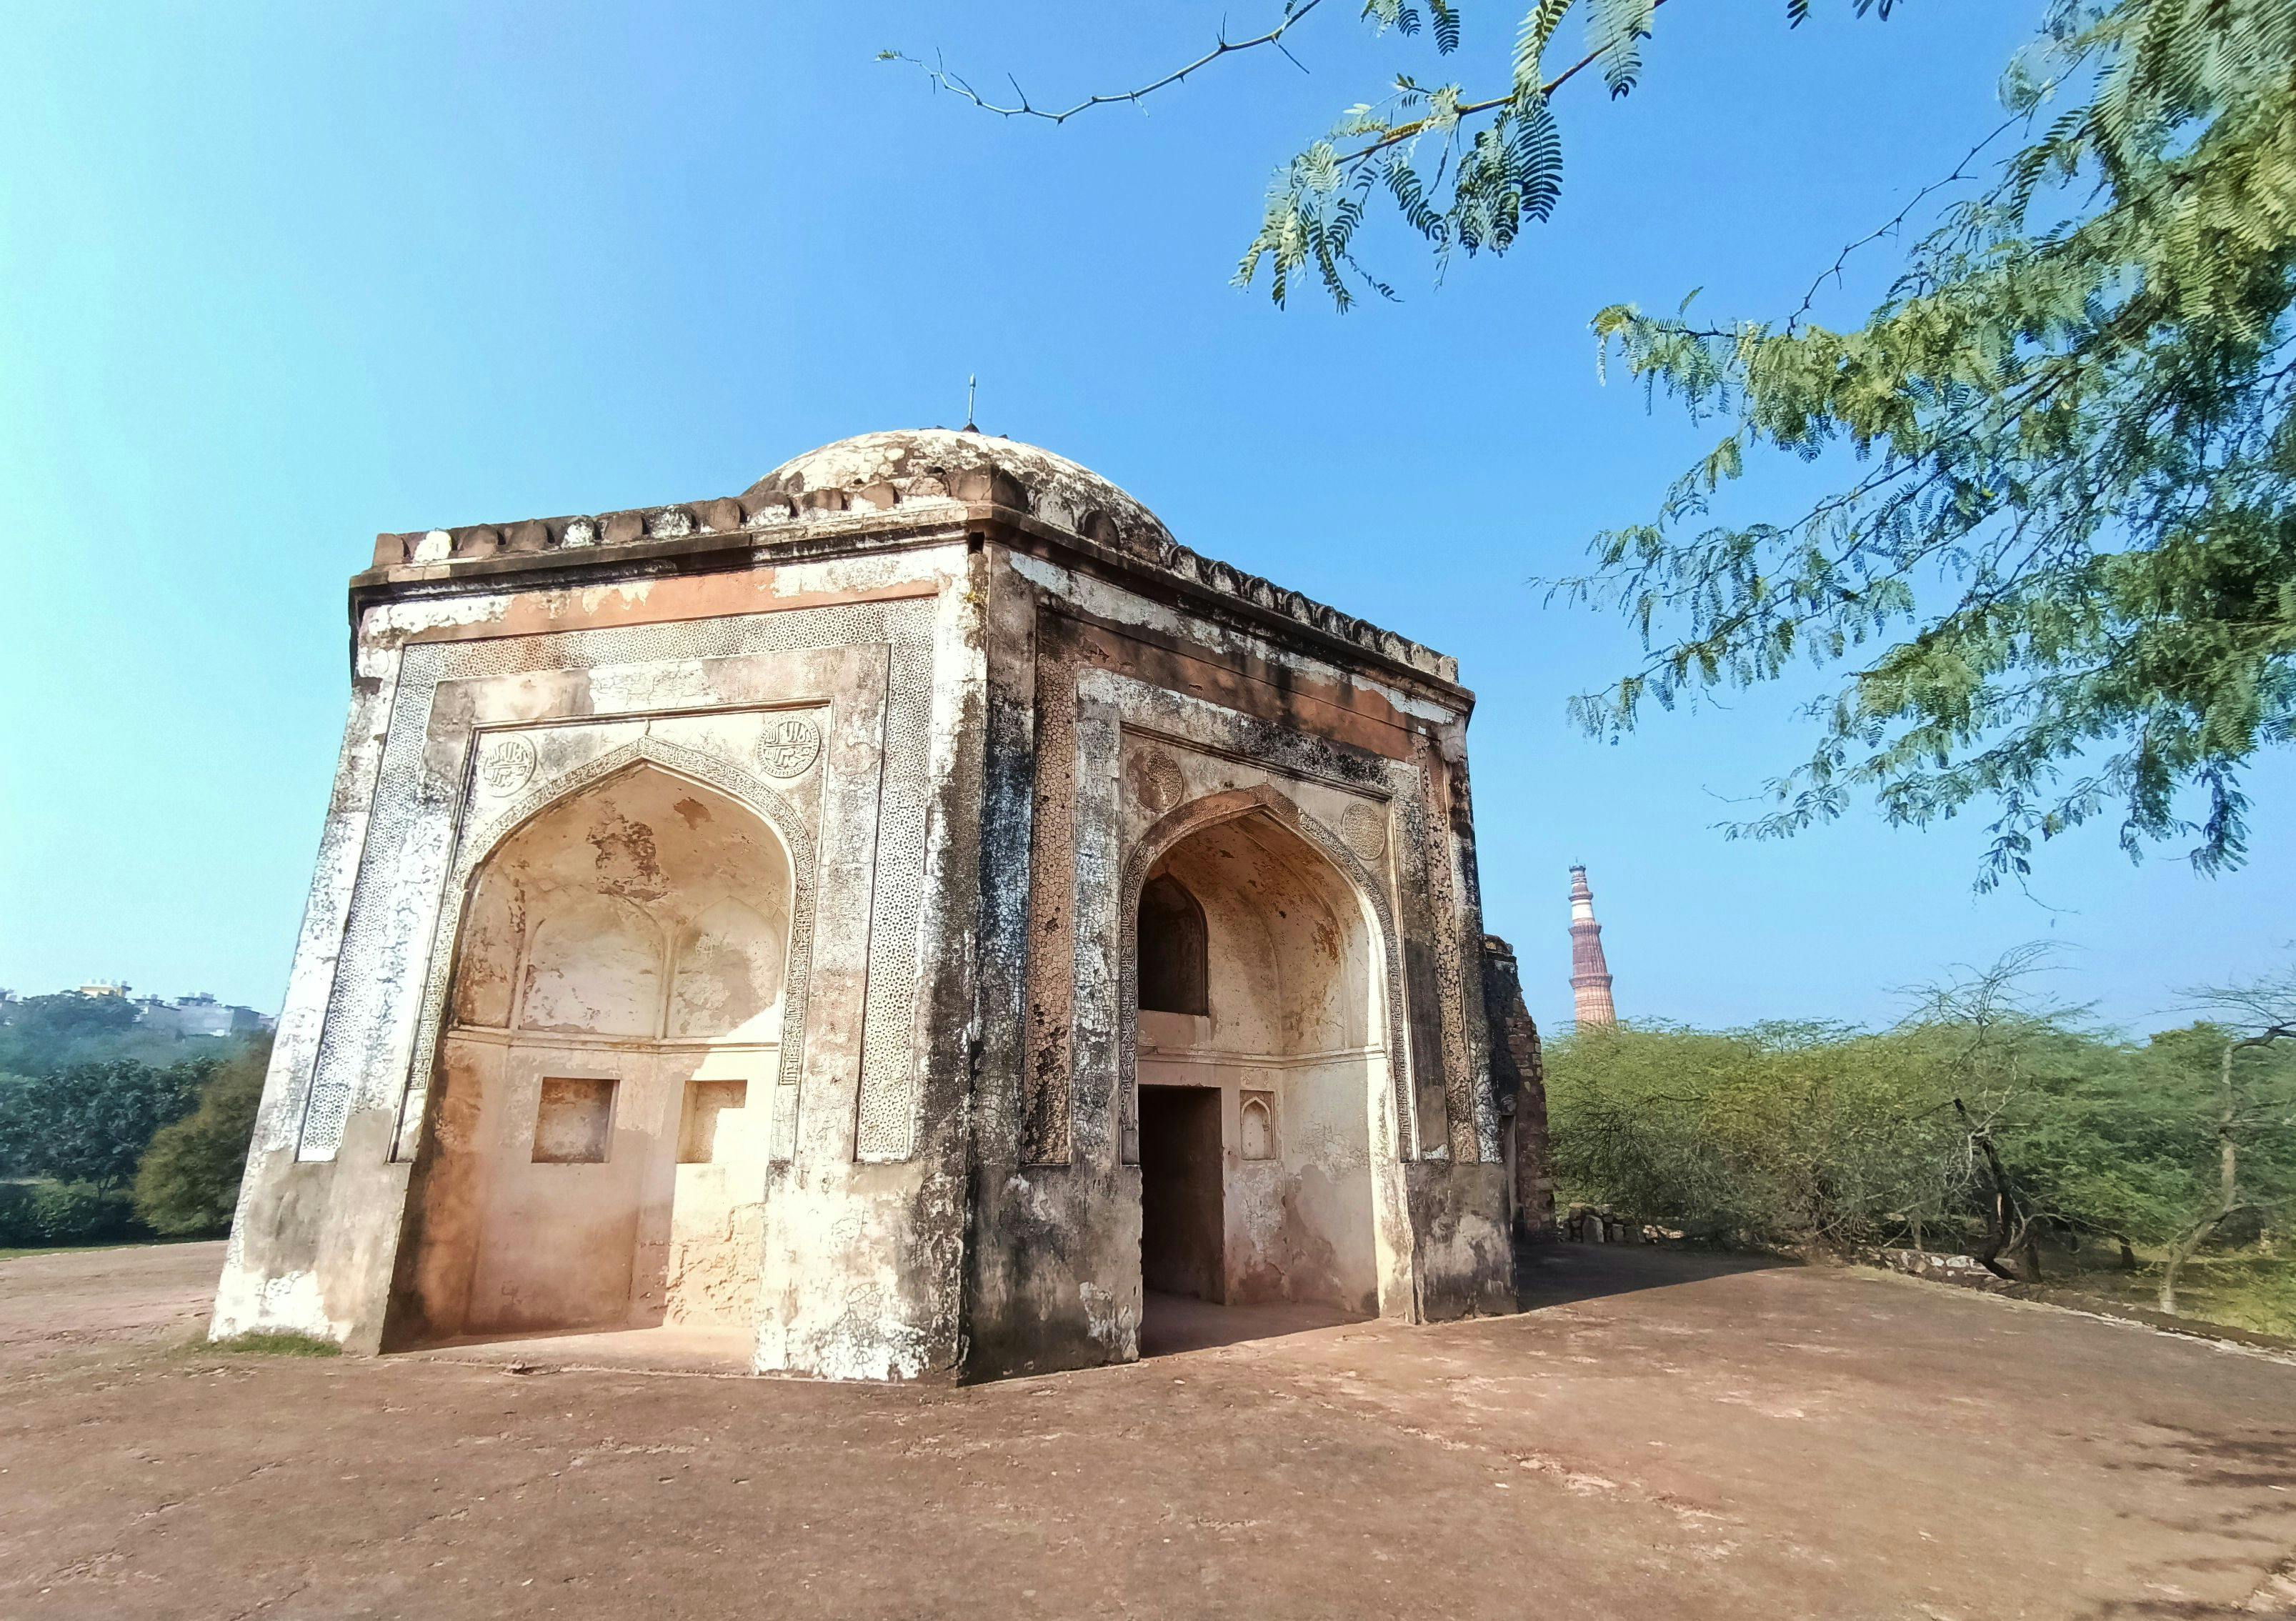 Tomb of Quli Khan